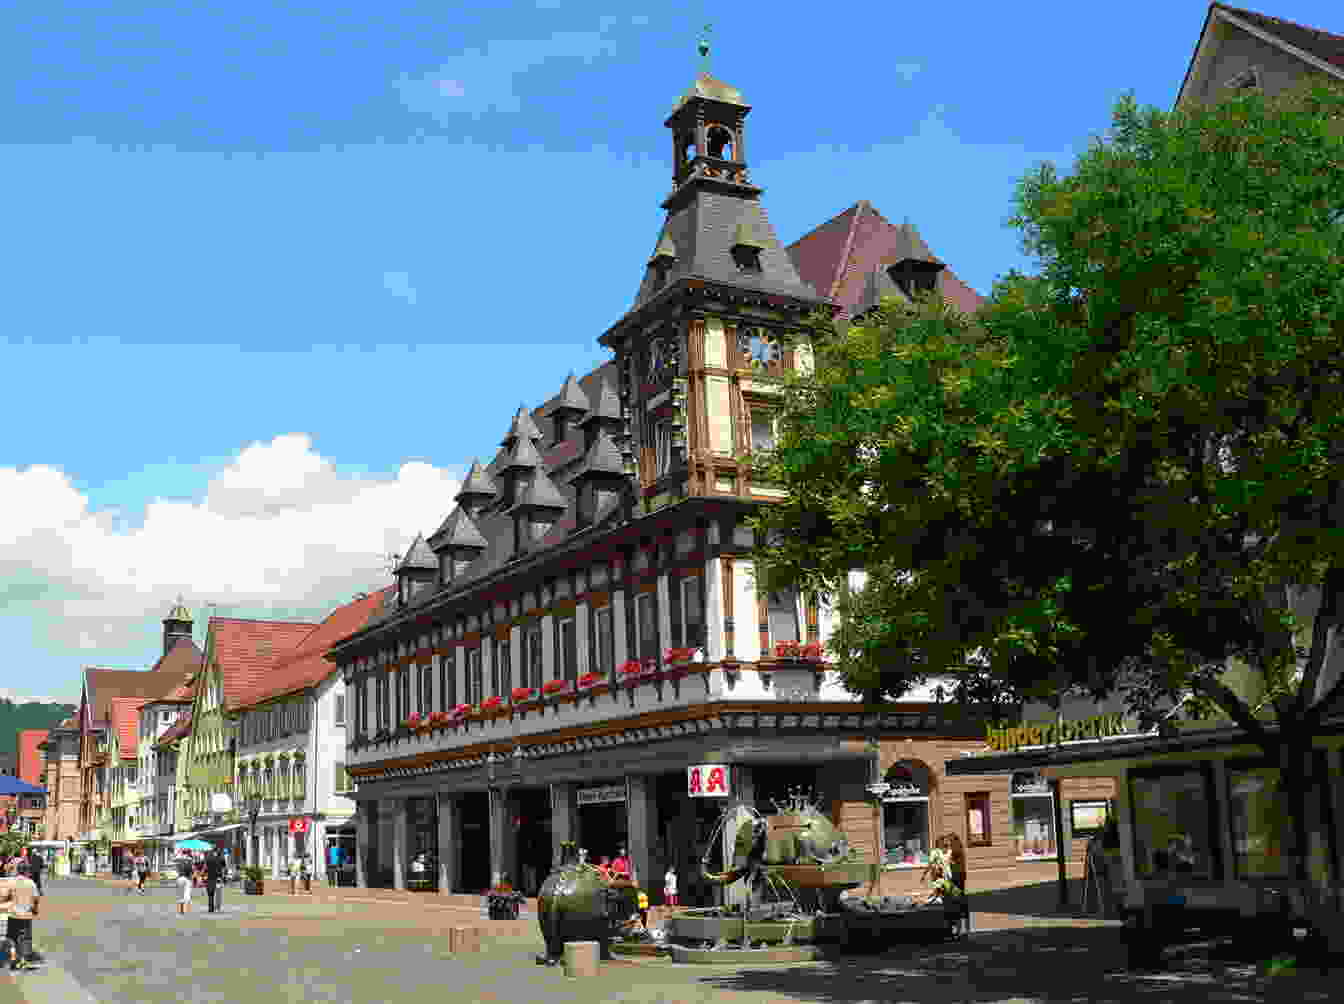 Bild der Stadt Geislingen an der Steige